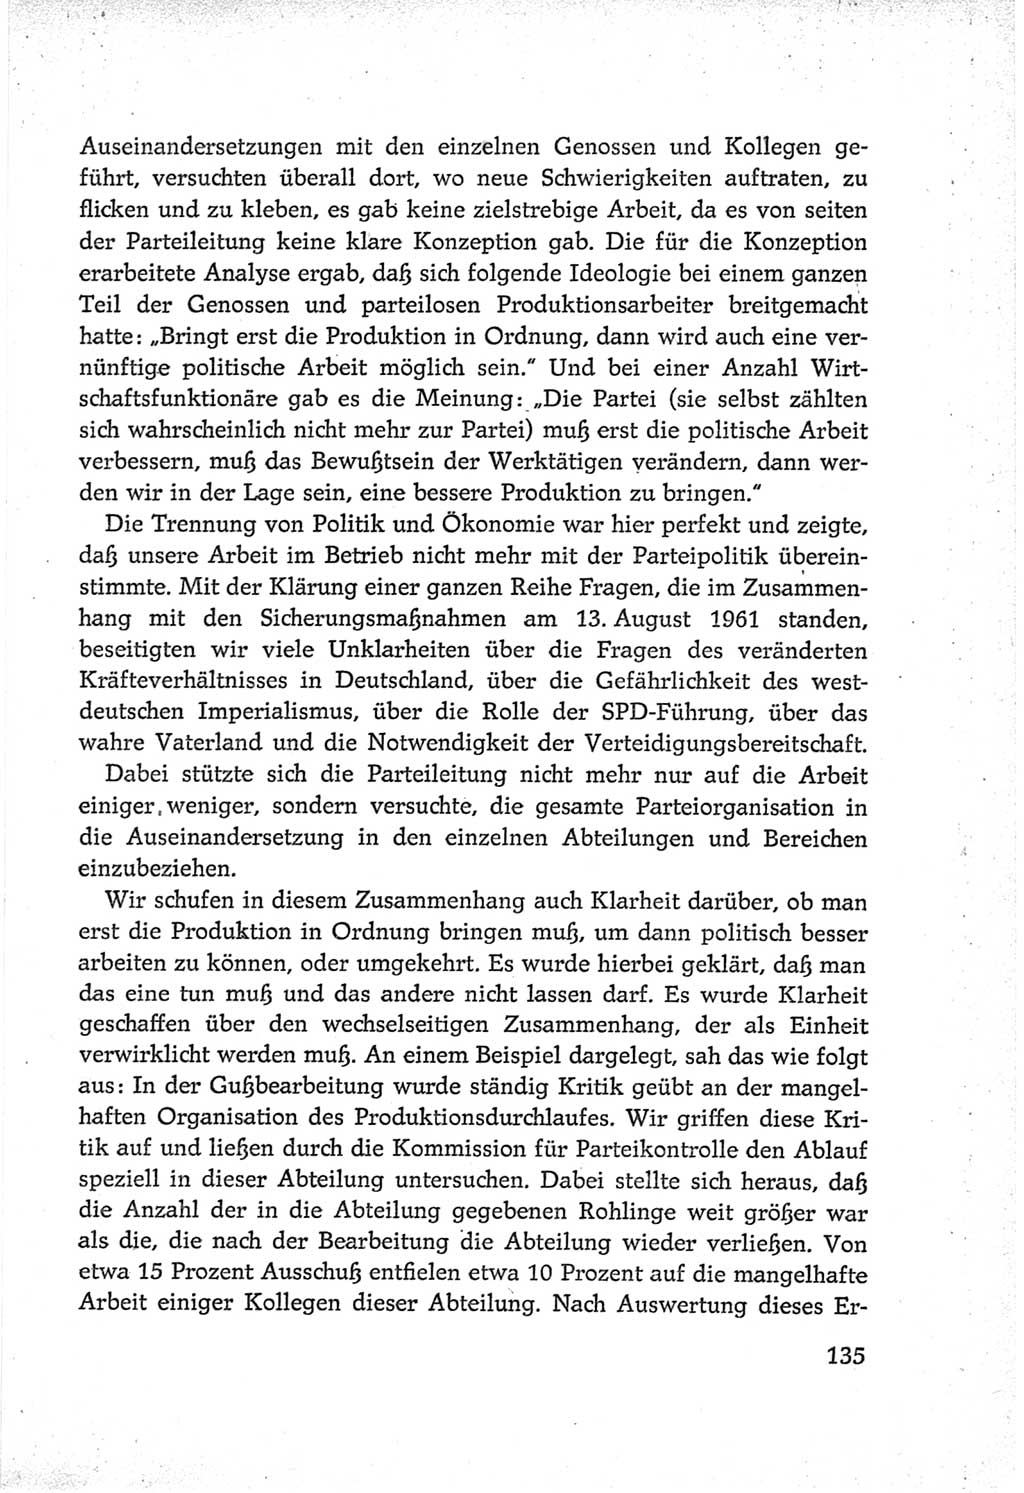 Protokoll der Verhandlungen des Ⅵ. Parteitages der Sozialistischen Einheitspartei Deutschlands (SED) [Deutsche Demokratische Republik (DDR)] 1963, Band Ⅲ, Seite 135 (Prot. Verh. Ⅵ. PT SED DDR 1963, Bd. Ⅲ, S. 135)